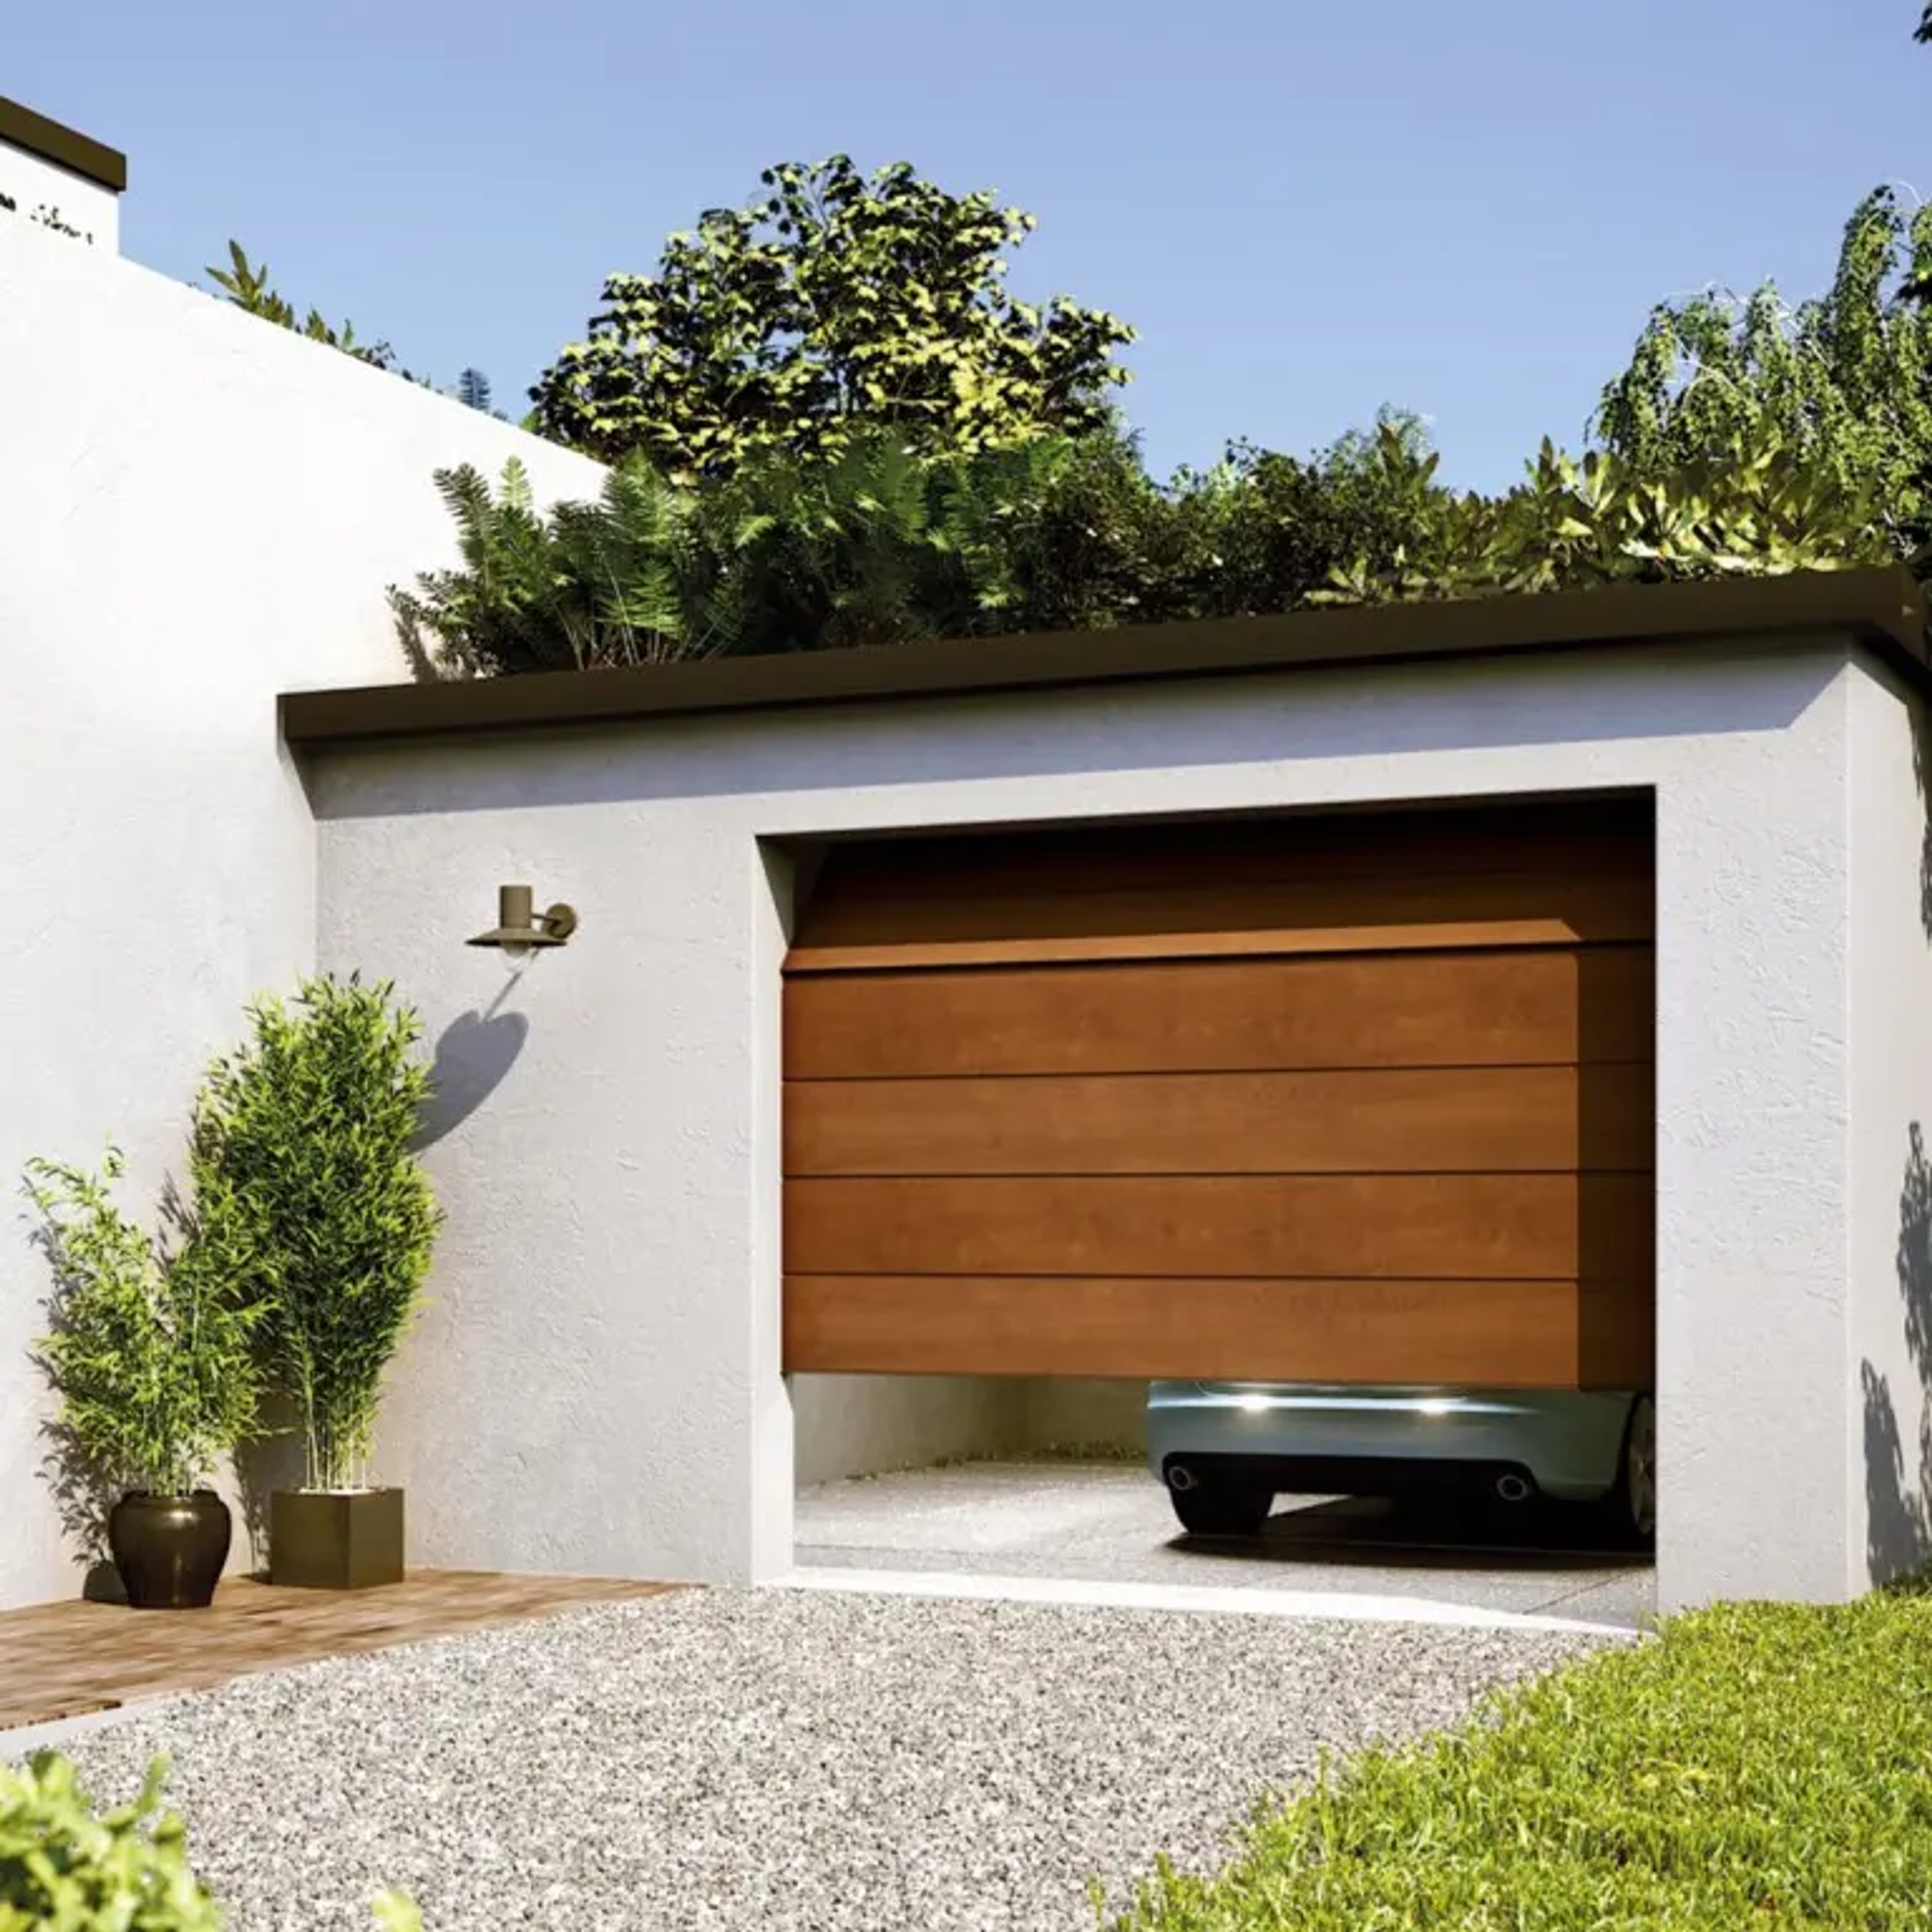 Comment motoriser une porte de garage ?